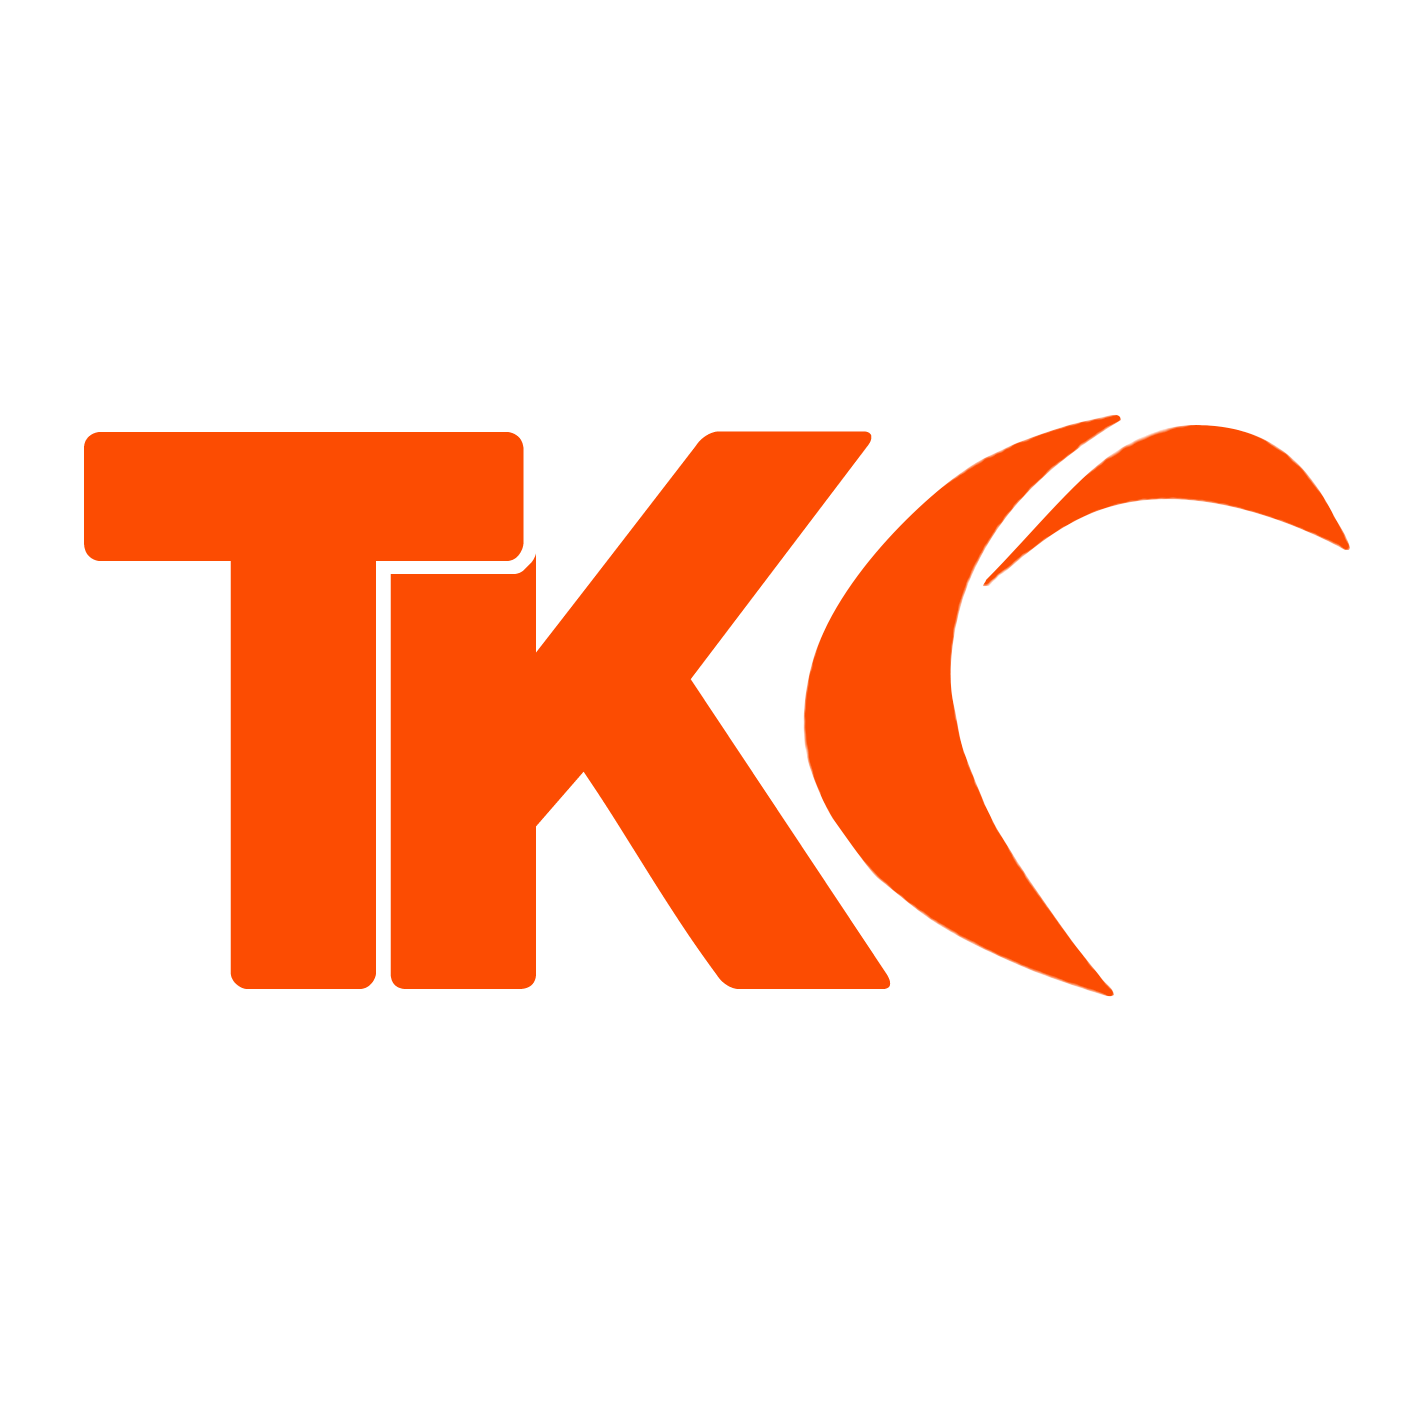 L’équipe du TKC